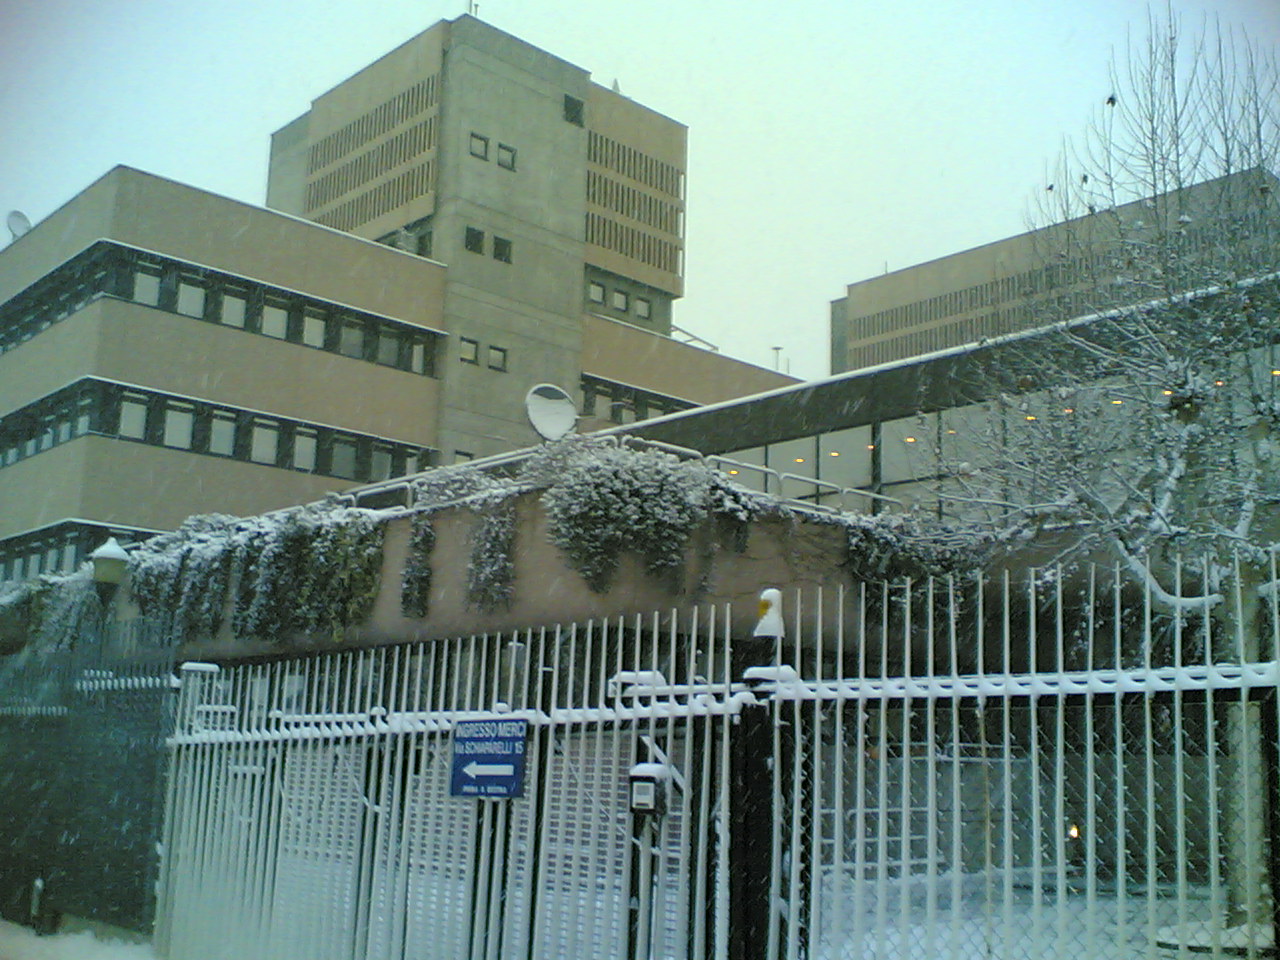 snow in turin - tilab premises